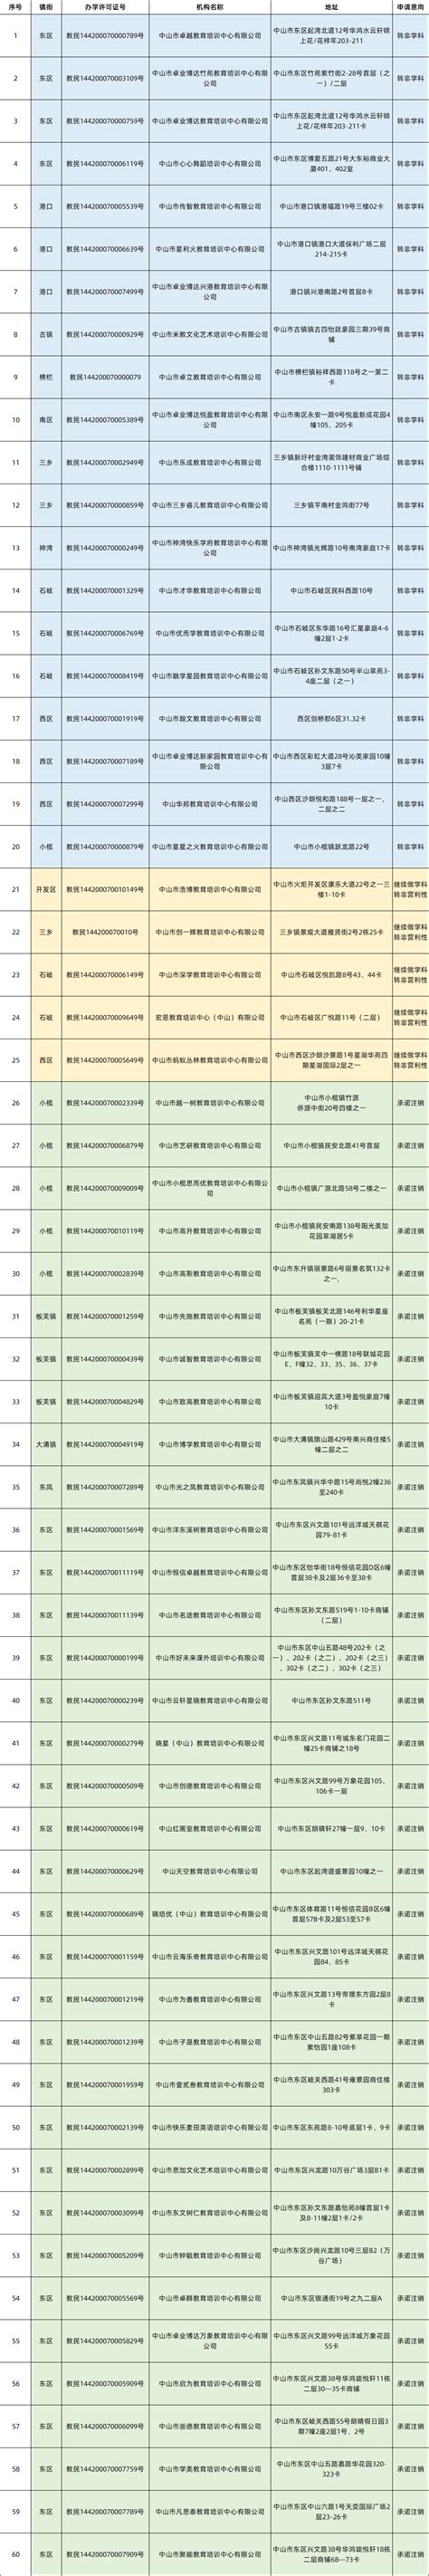 北京12教委公布“首批学科类校外培训机构白名单”，部分地区公布黑名单-蓝鲸财经